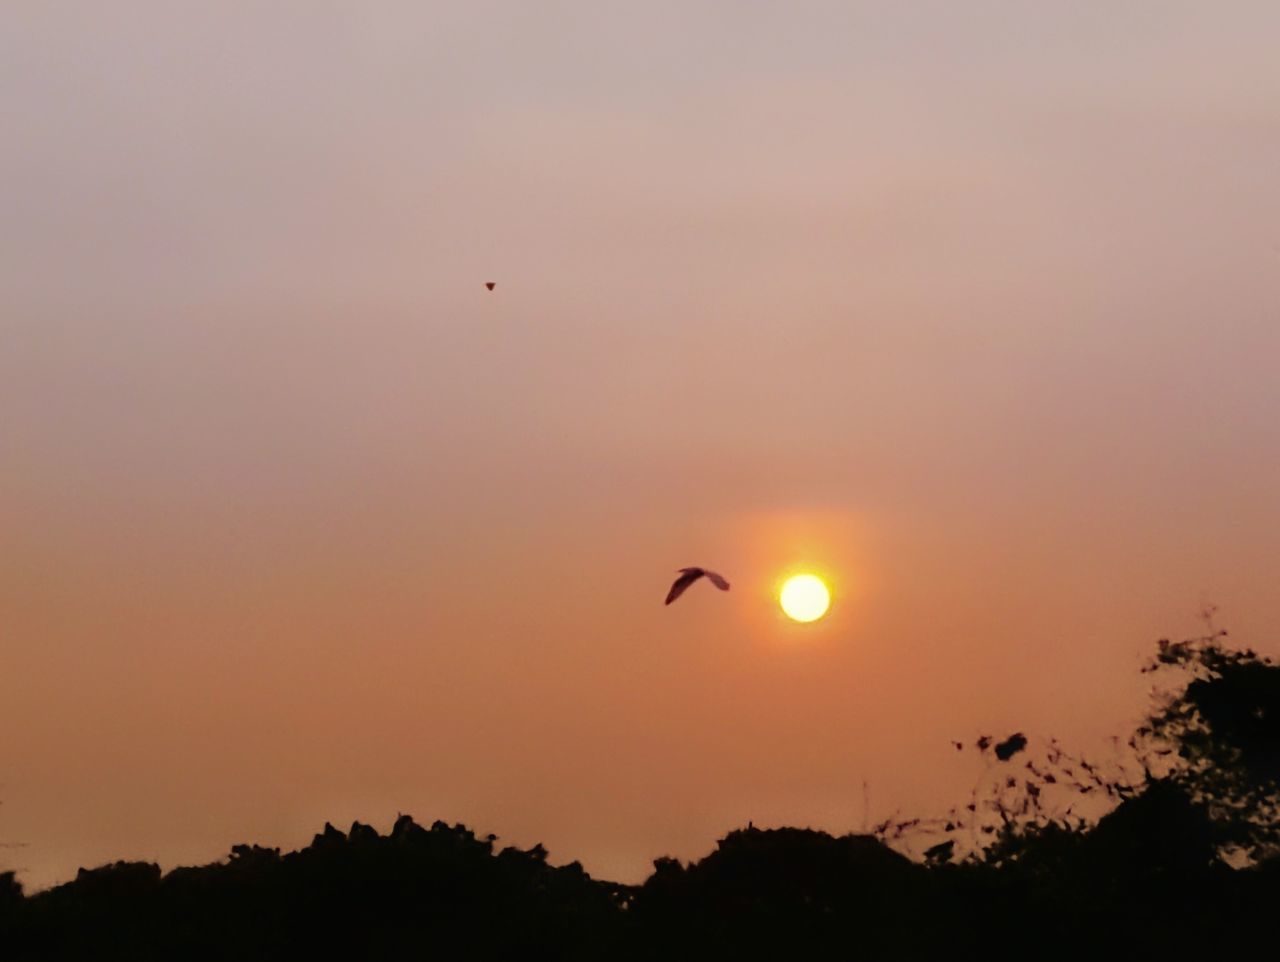 SILHOUETTE OF BIRDS FLYING AGAINST ORANGE SKY